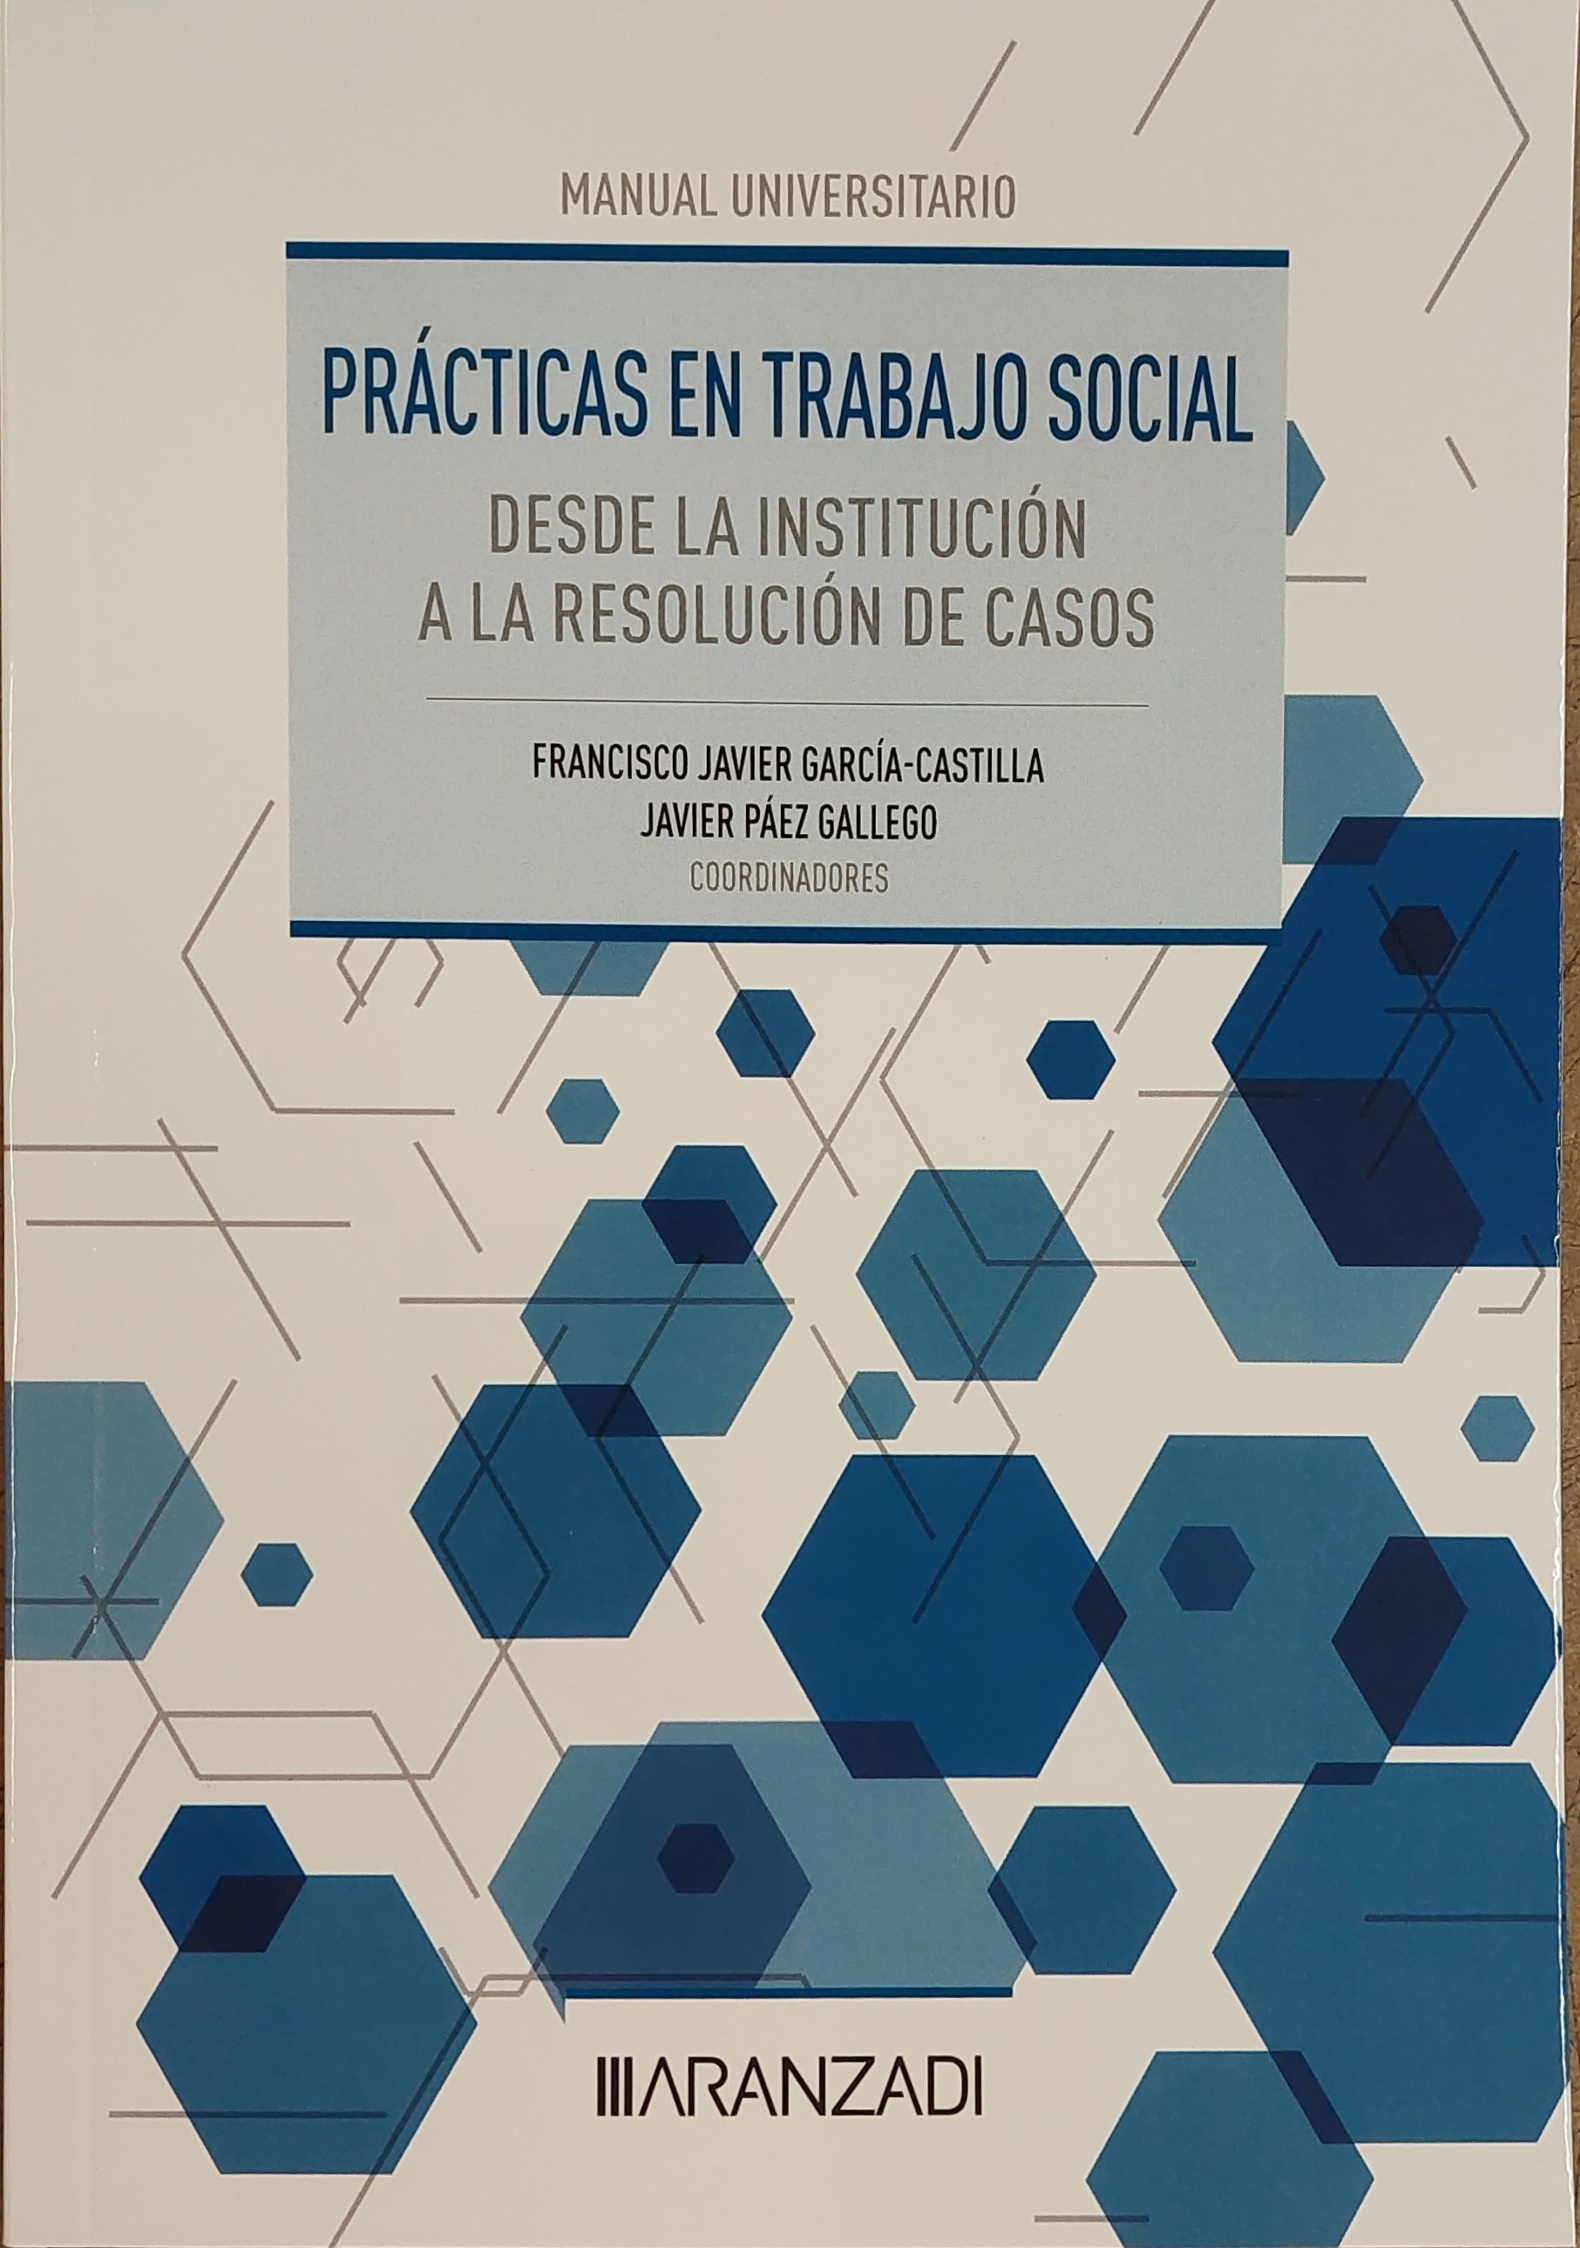 Practicas en trabajo social: desde institucion a resolución de casos